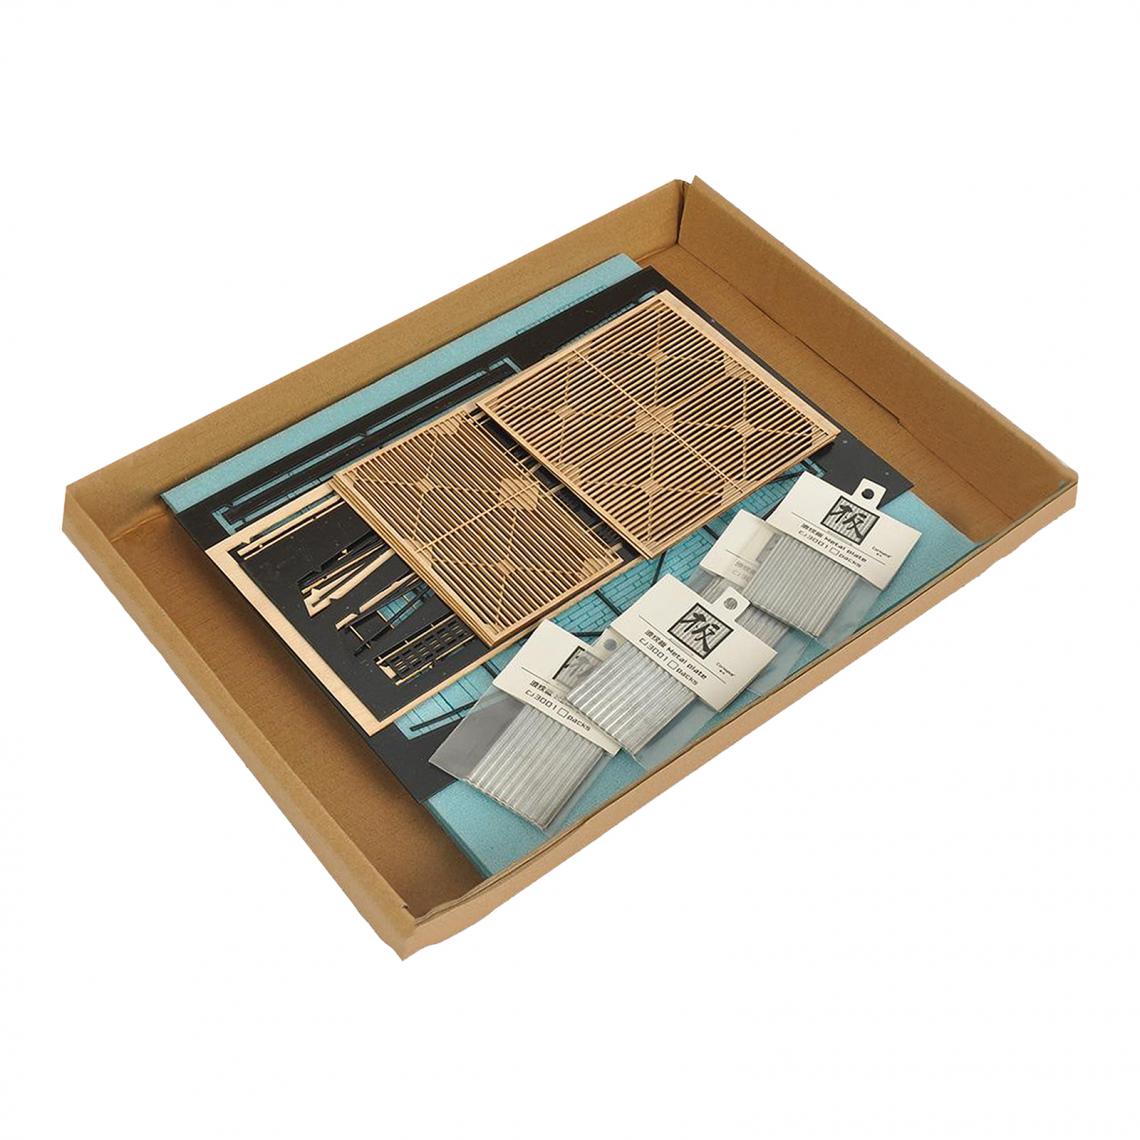 marque generique - 1:35th DIY Dioramas Modèle de Bâtiment Kits, L'architecture Ruines Maison Scène, Mise En Page Accessoire - Voitures